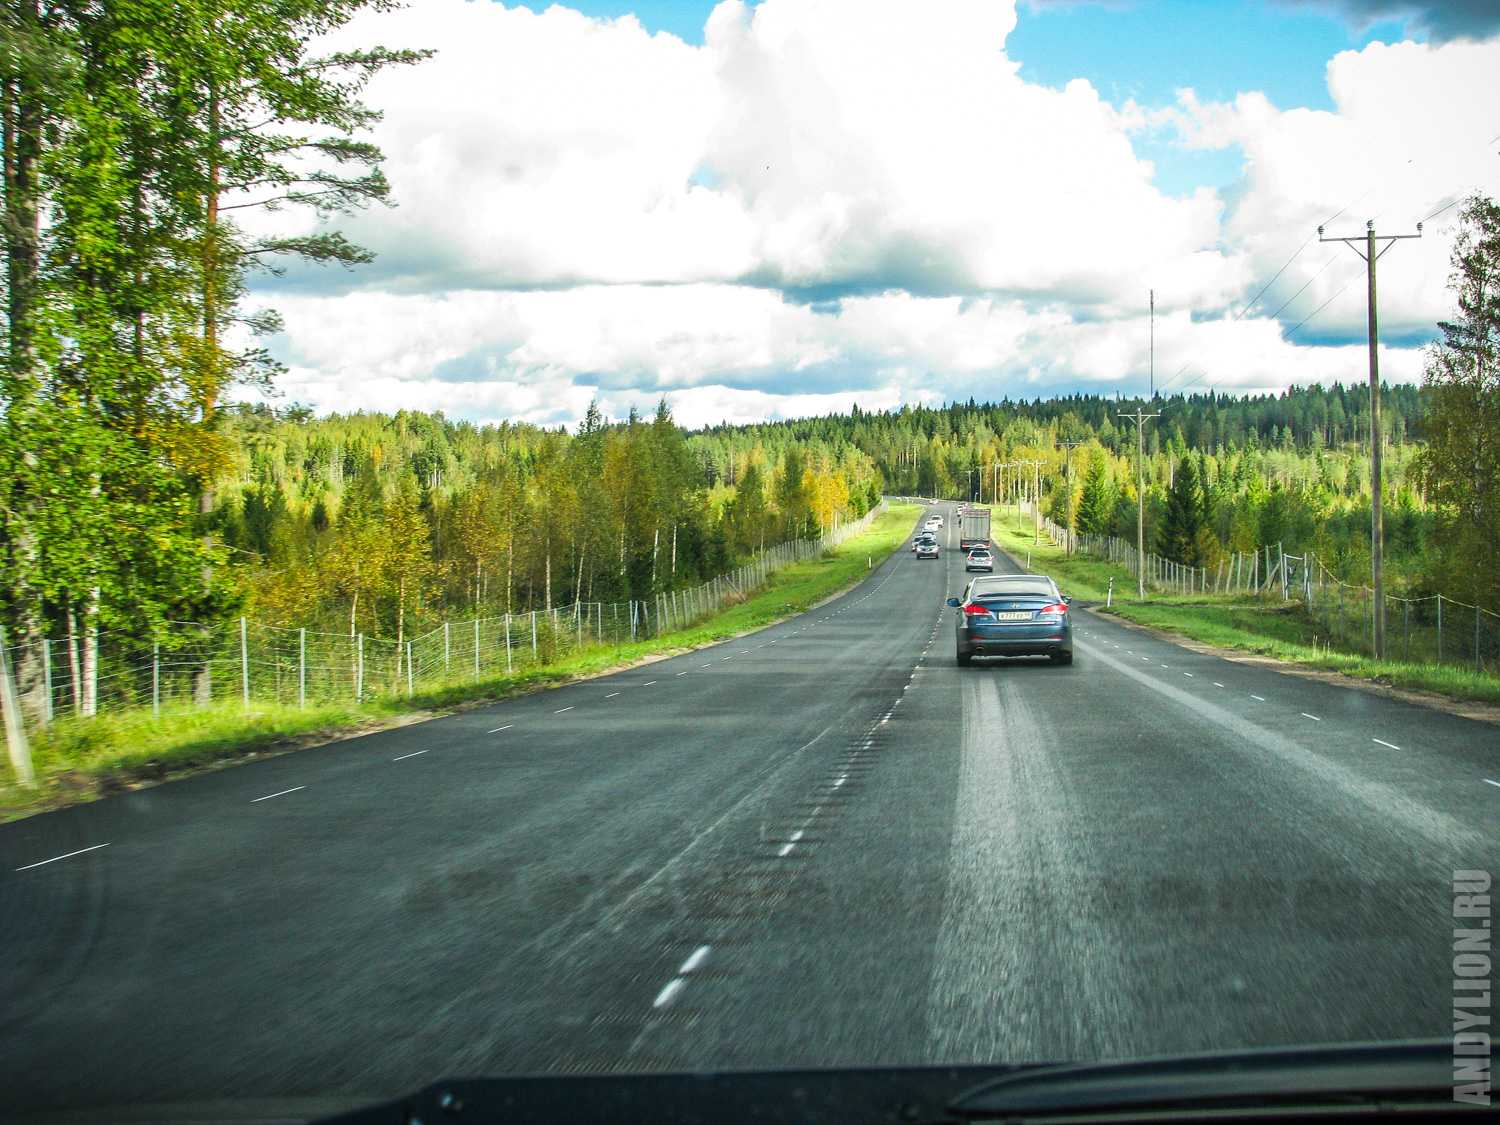 Выезд в финляндию на автомобиле в 2020 году — документы, пересечение и прохождение границы